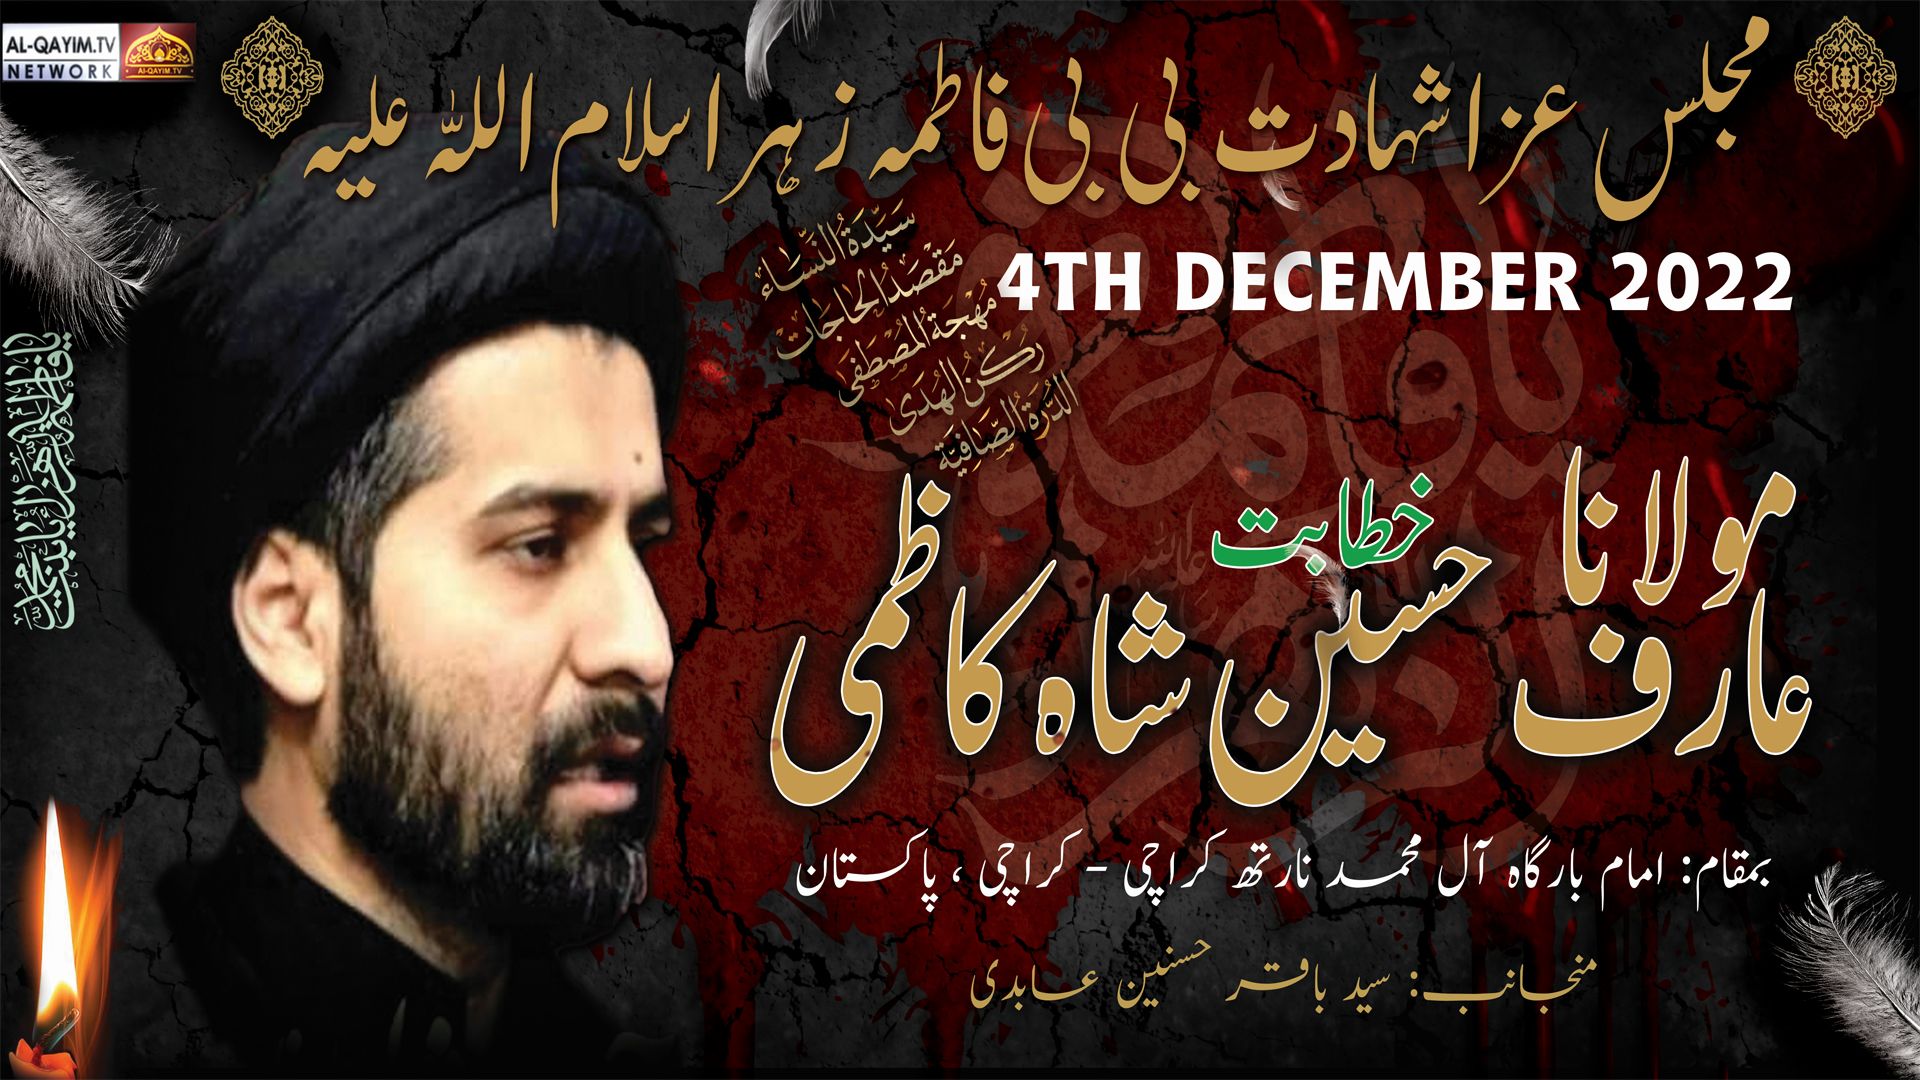 Ayyam-e-Fatima Majlis | Maulana Arif Hussain Kazmi | 9 Jamadi Awal 1444/2022, AleyMohammed - Karachi